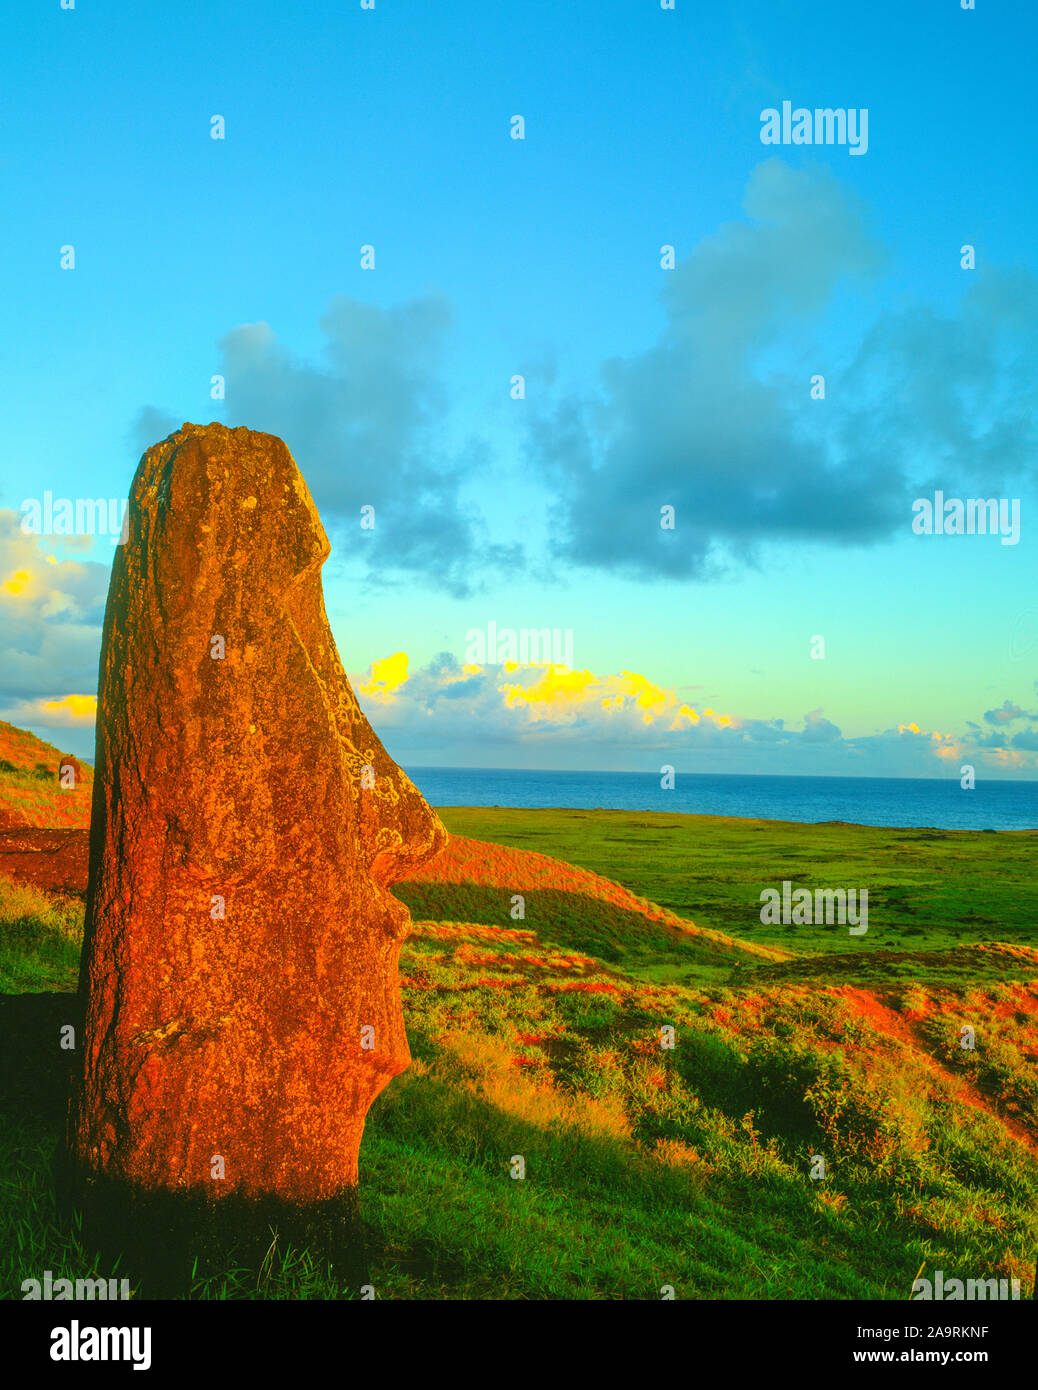 Estatuas moai en Rano Raraku, Isla de Pascua, Chile Parque Nacional Rapa Nui, Océano Pacífico del Sur Foto de stock